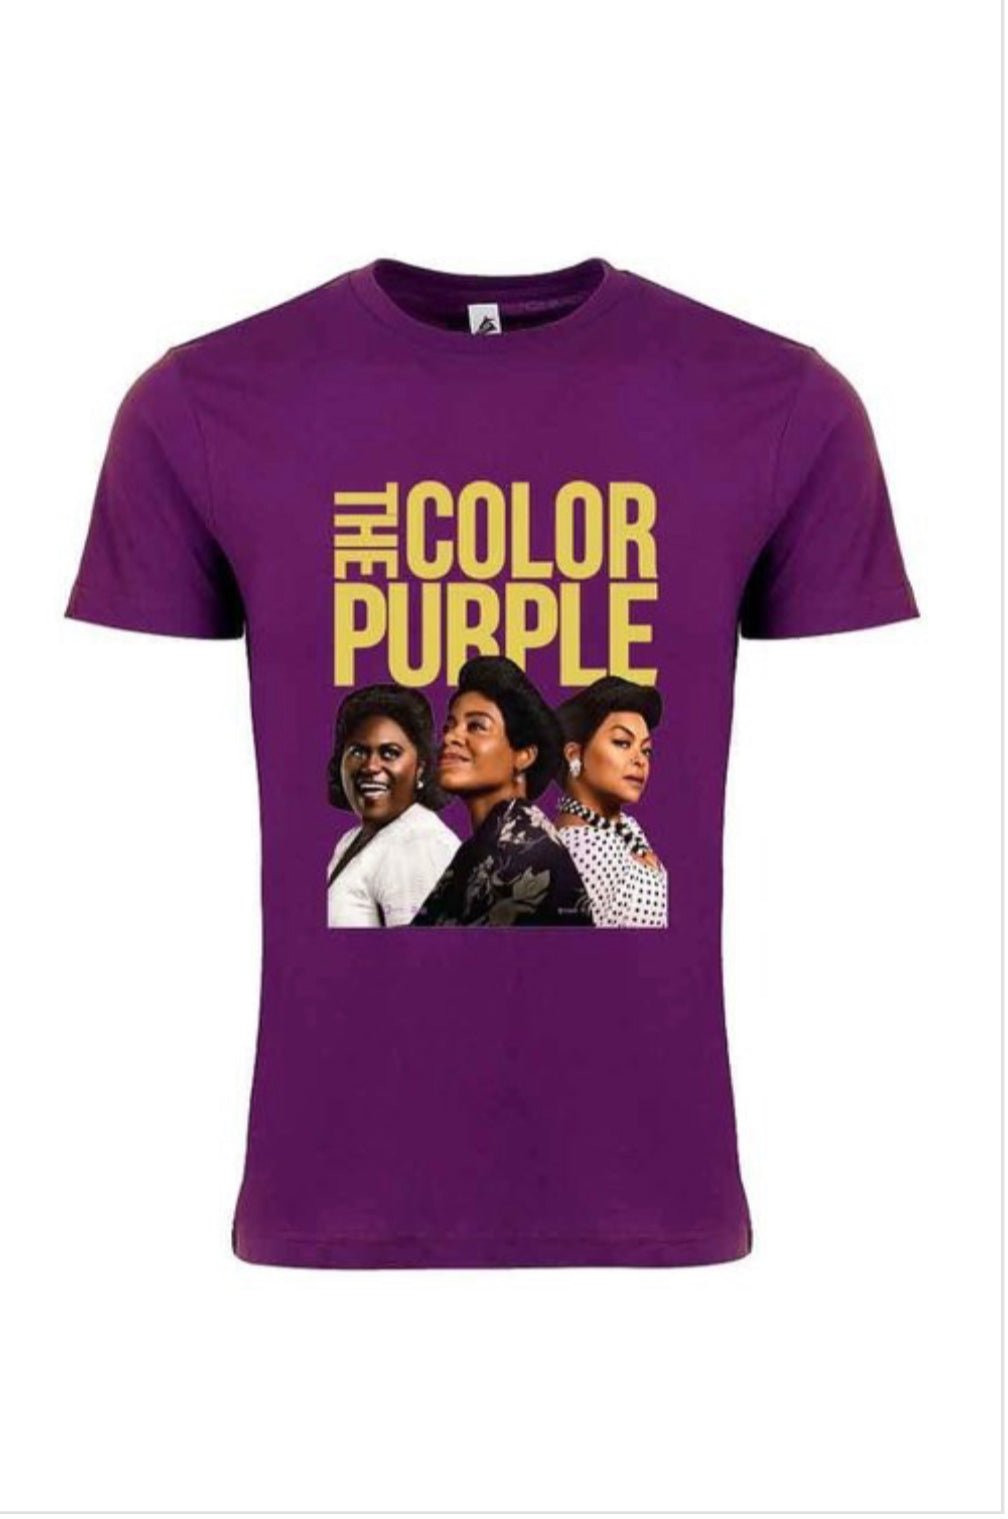 The Color Purple T Shirt